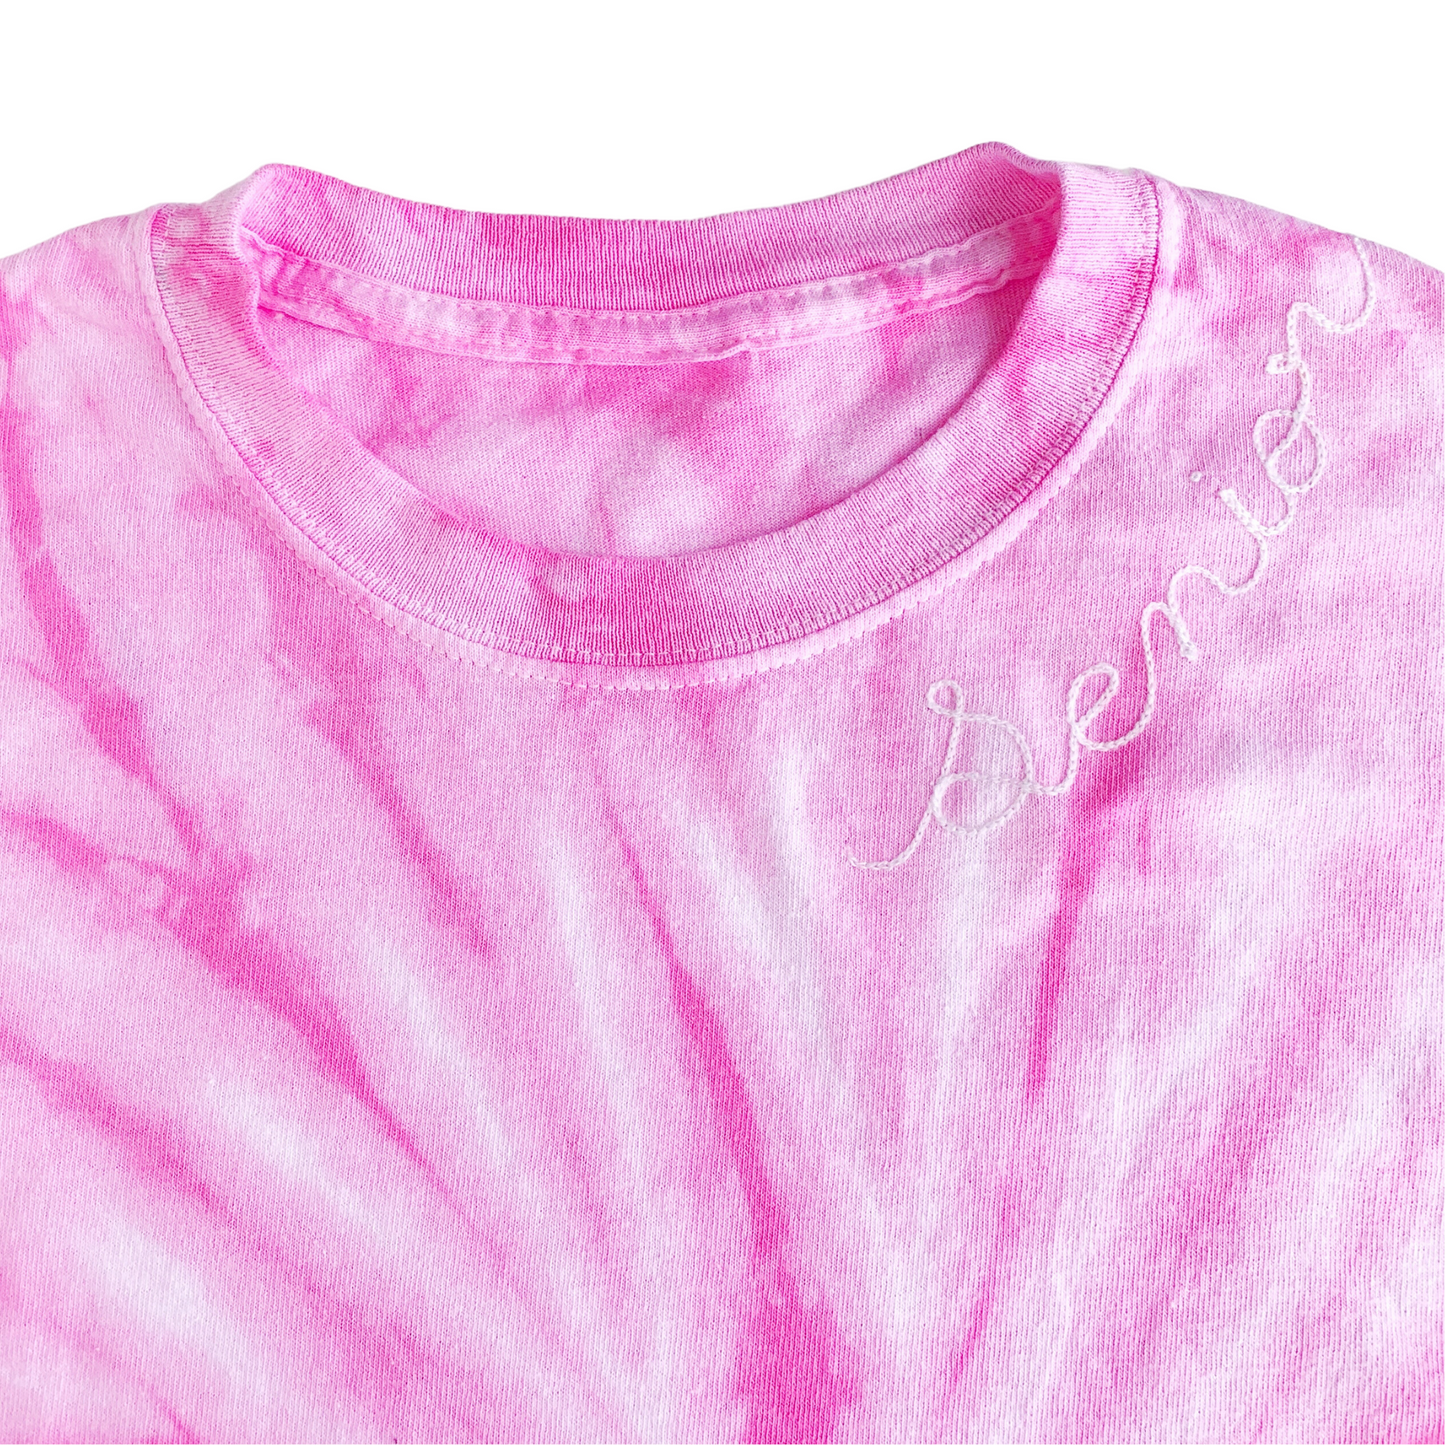 Adult Pink Tie Dye Chainstitch T-Shirt